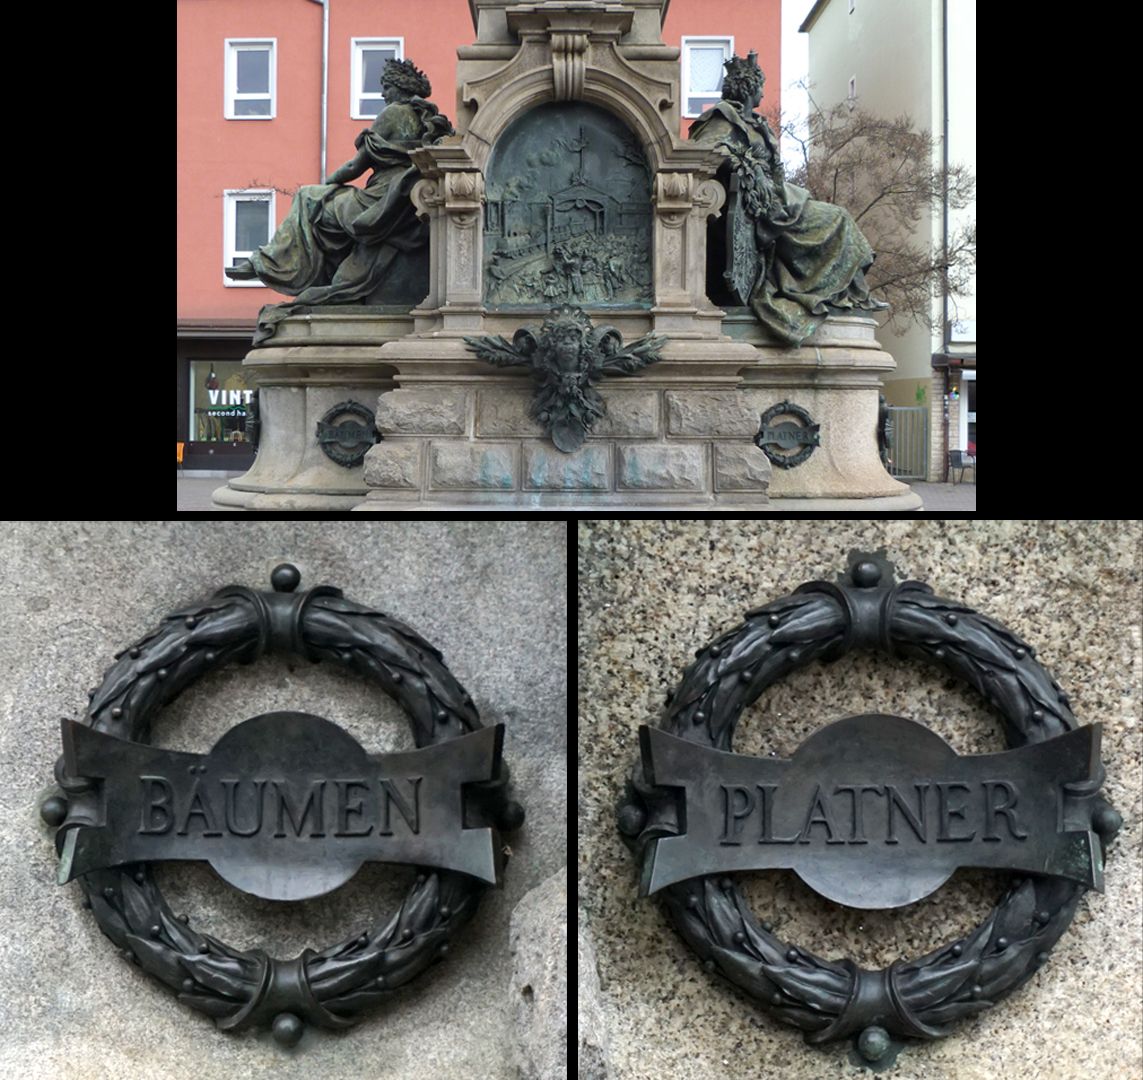 Ludwigseisenbahn-Denkmal Südseite, zwei Lorbeerkränze mit den Namen BÄUMEN (Franz Joseph von Bäumen, 1784 - 1861, 1. Bürgermeister von Fürth) und PLATNER (Georg Zacharias Platner, 1781 - 1862, Hauptaktionär und Direktor der "Ludwigs-Eisenbahn-Gesellschaft-Nürnberg")